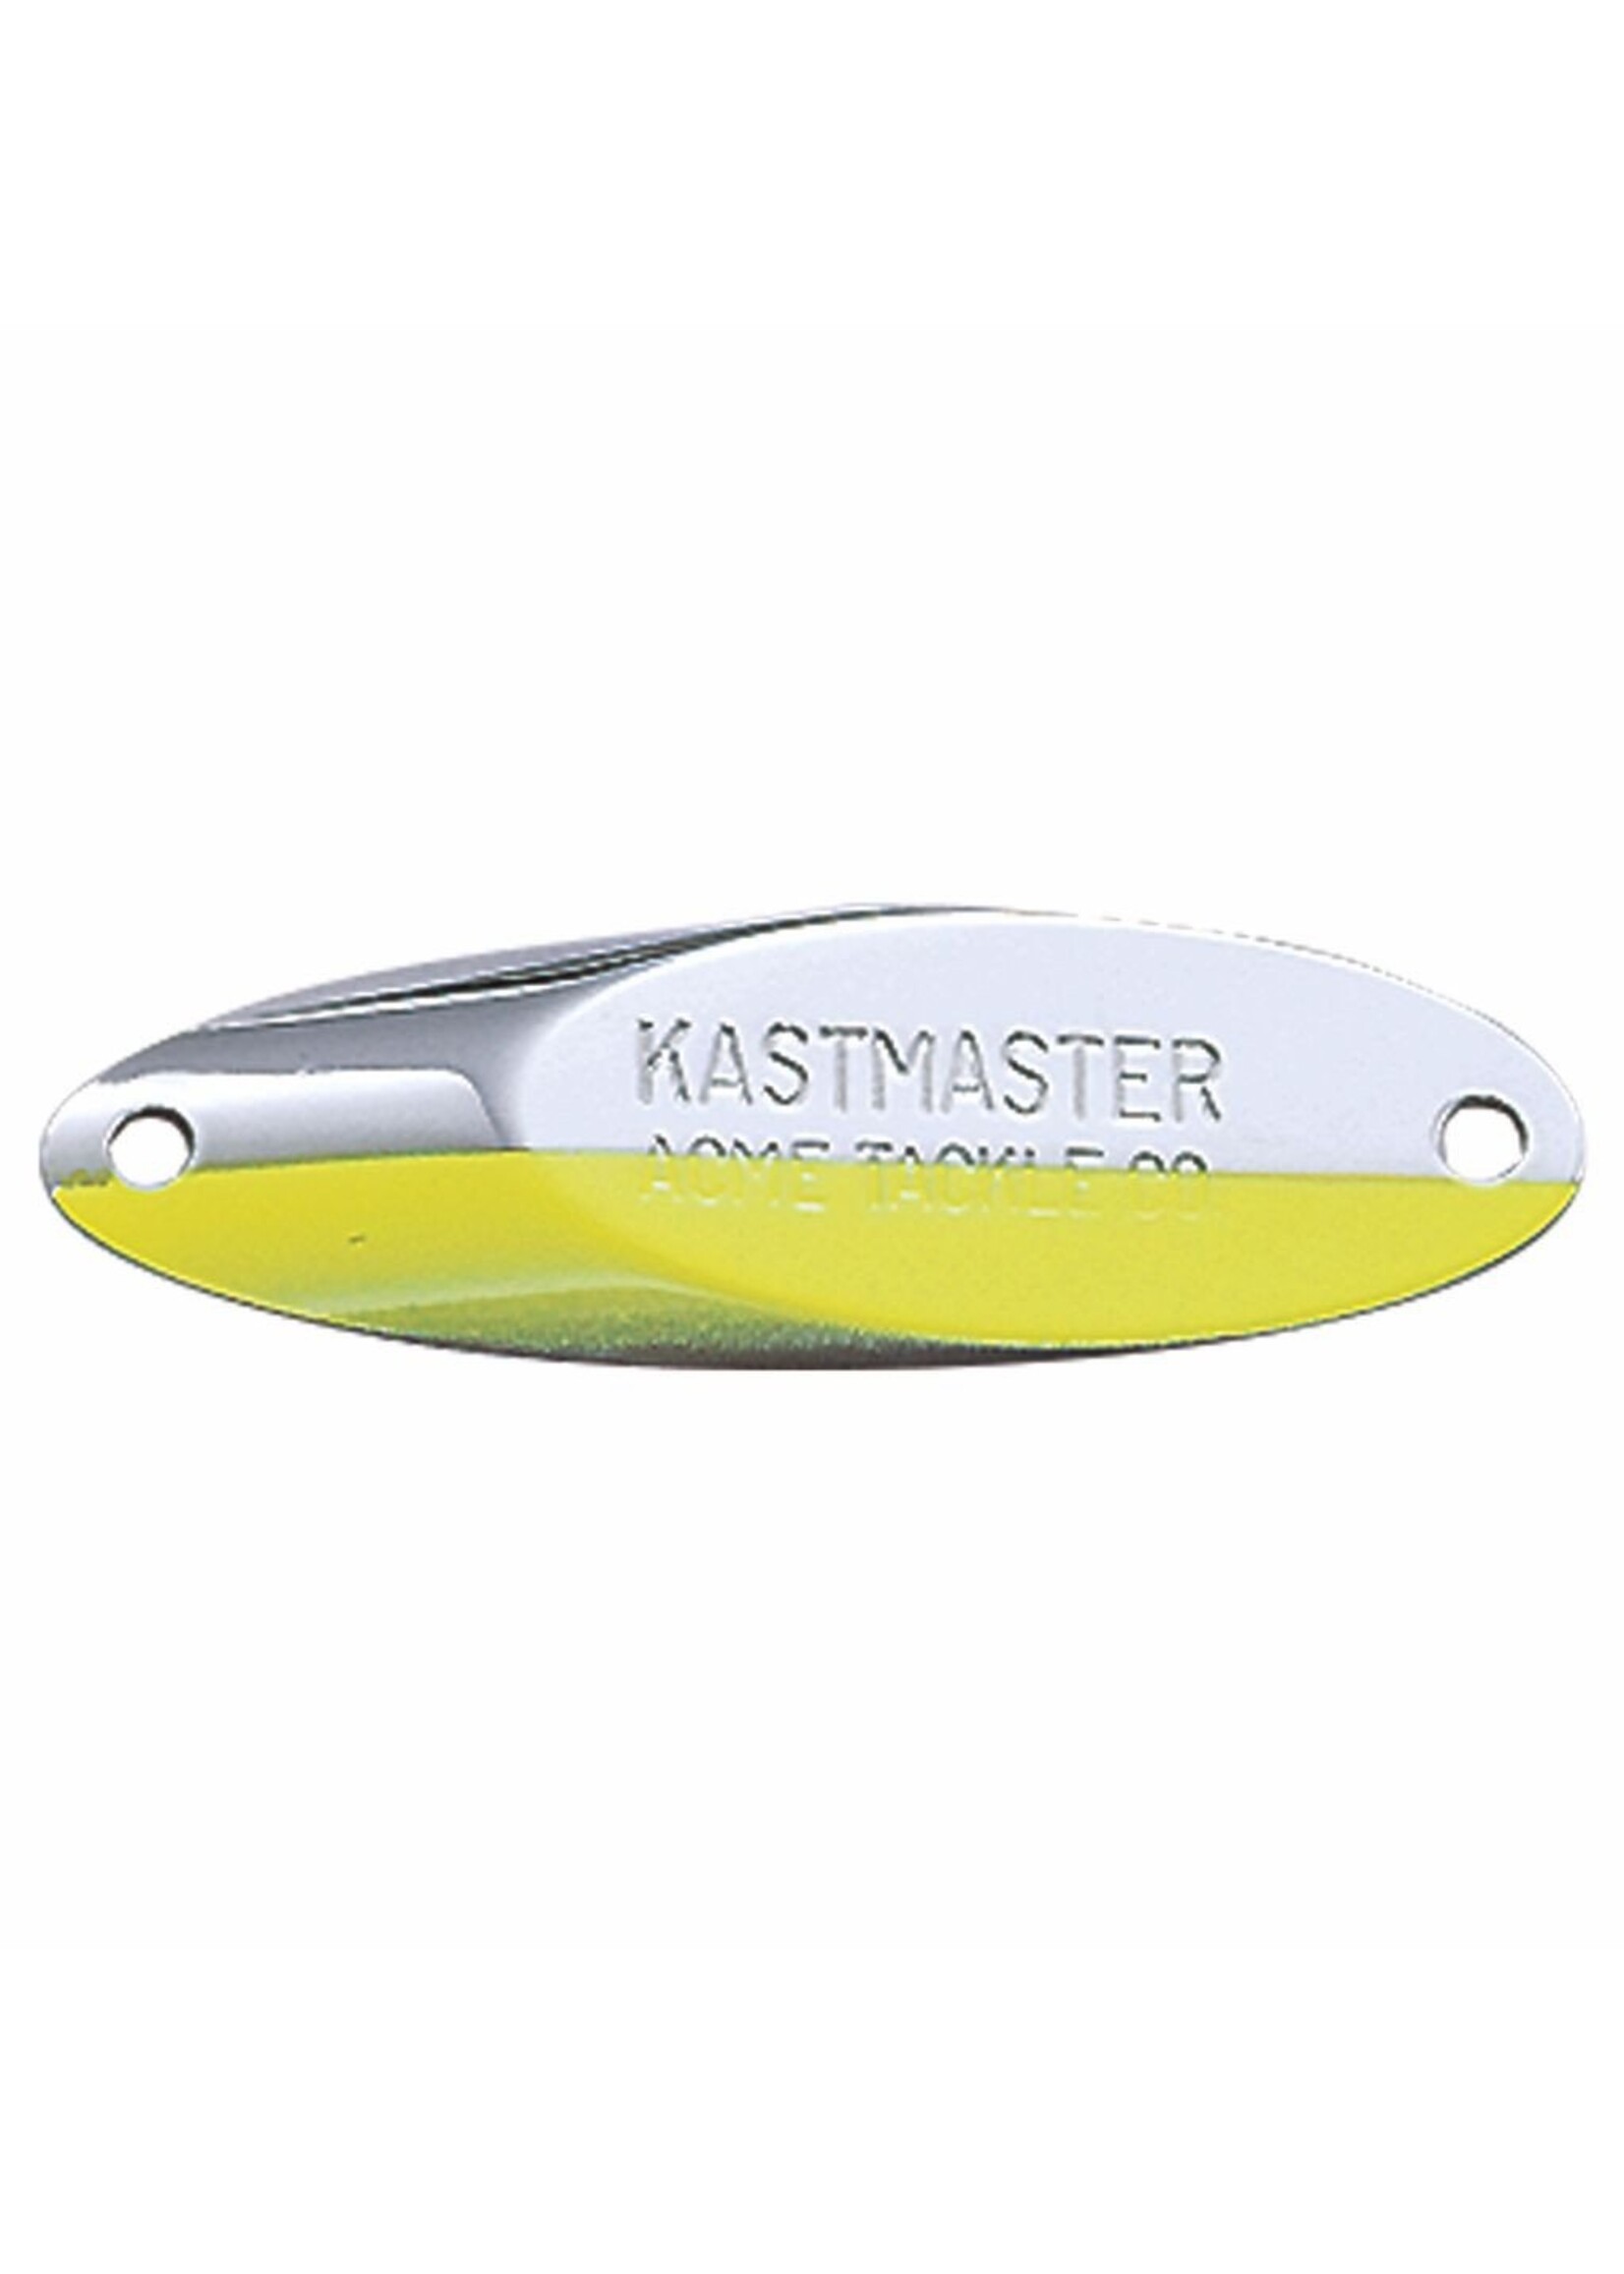 Acme Acme Kastermaster - 1/8 oz.